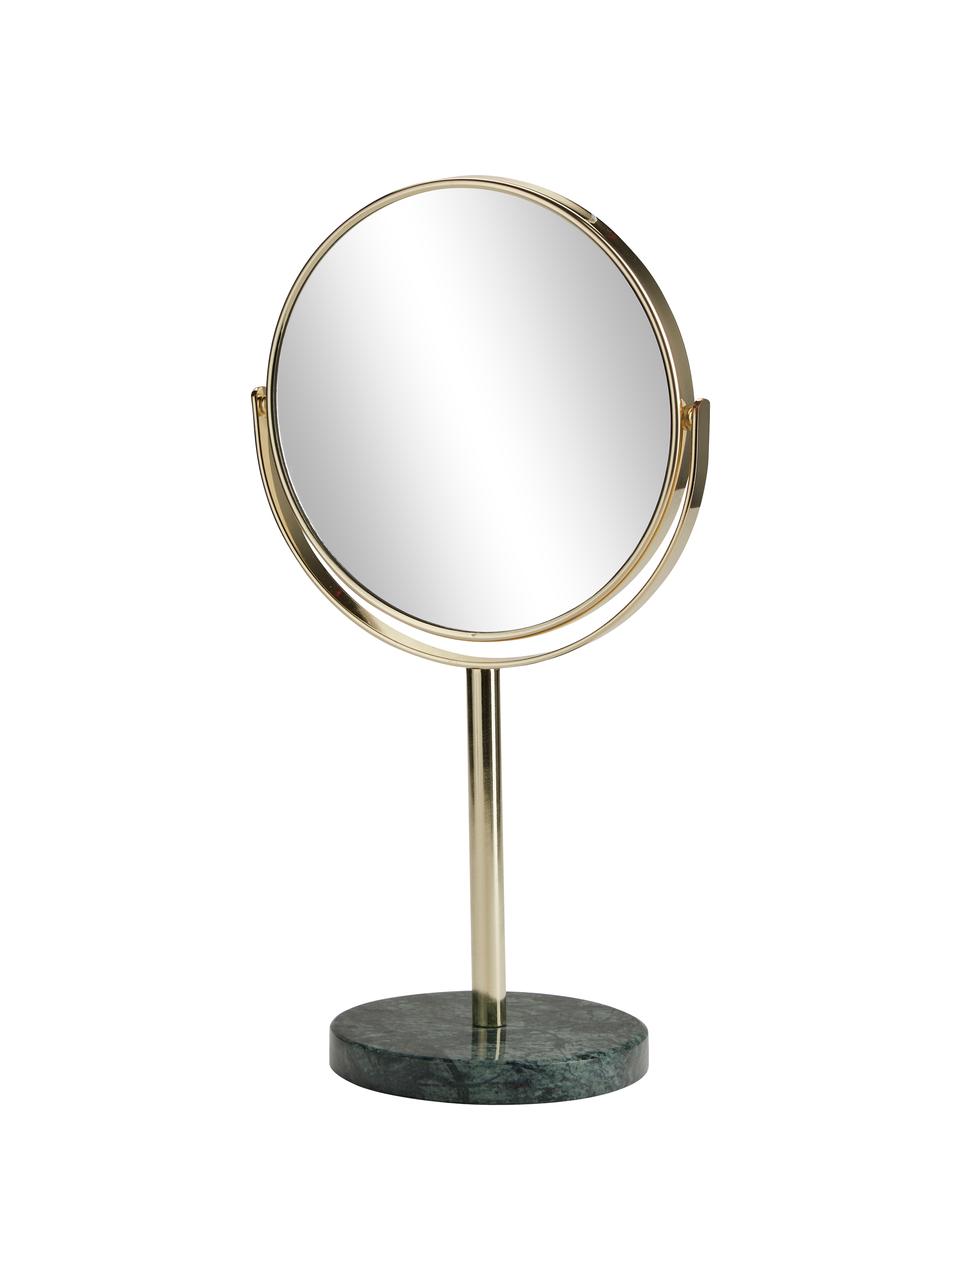 Runder Kosmetikspiegel Ramona mit grünem Marmorfuß, Rahmen: Metall, Fuß: Marmor, Spiegelfläche: Spiegelglas, Goldfarben, Grün, marmoriert, Ø 20 x H 34 cm